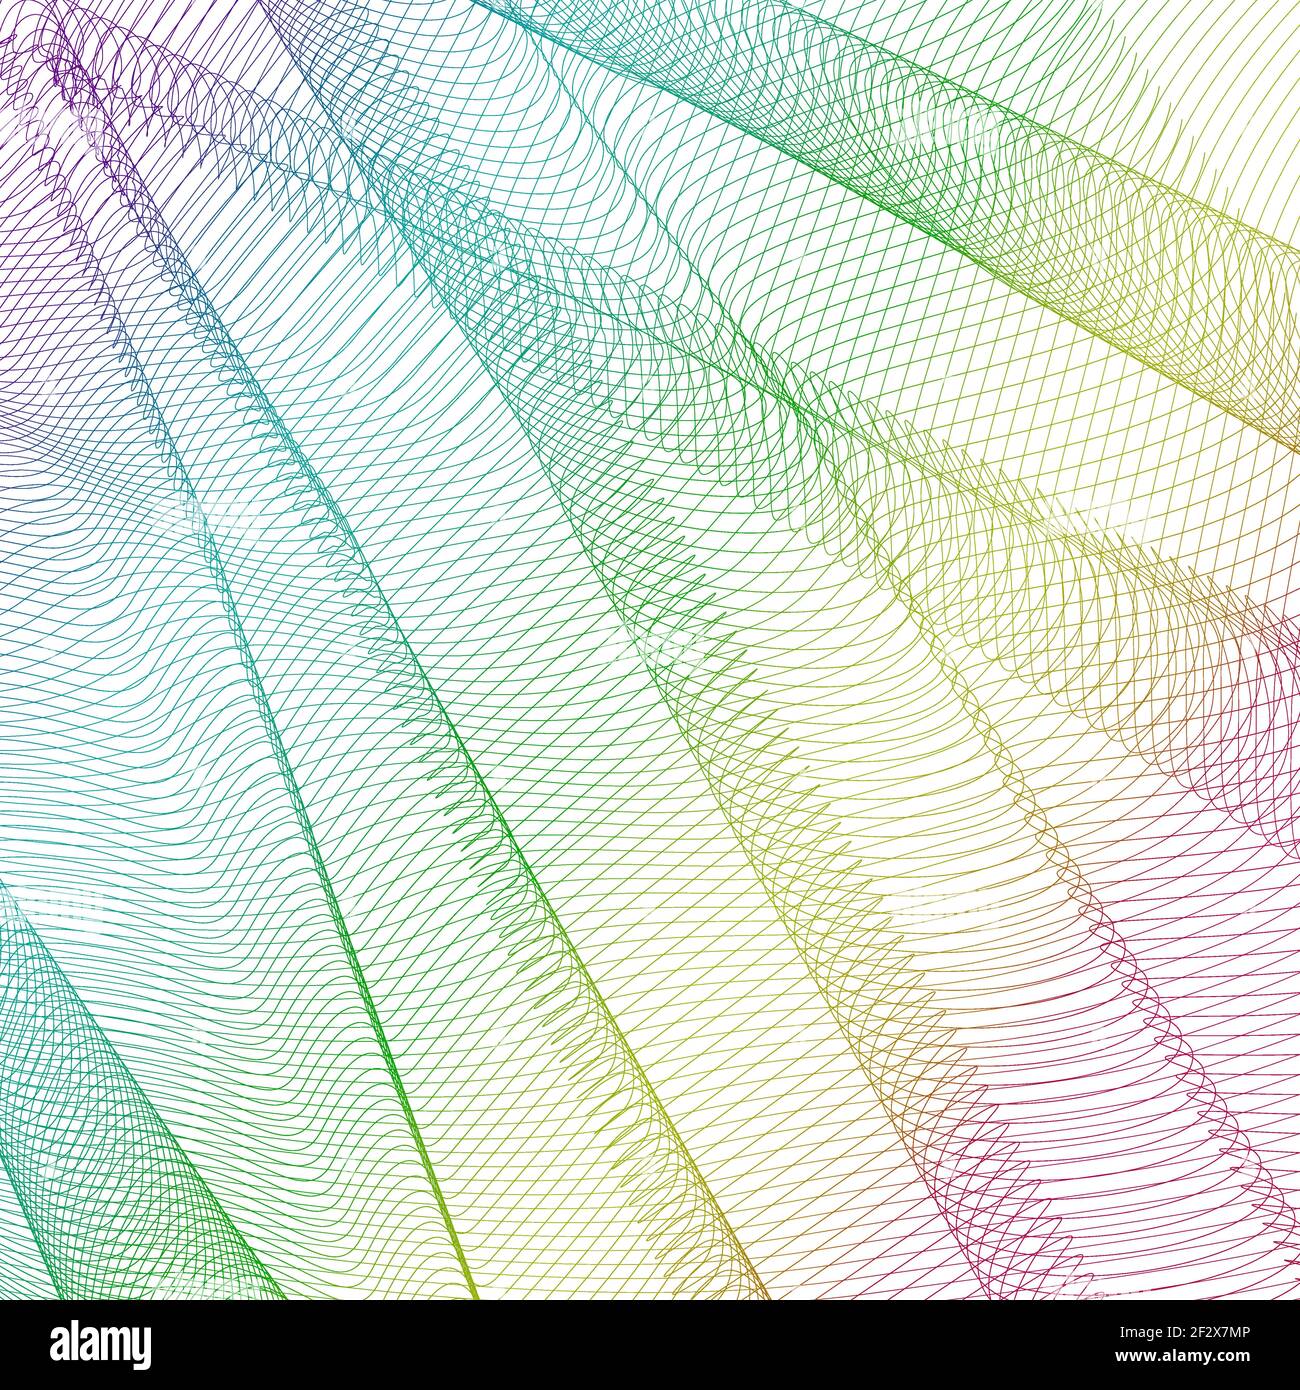 Abstrakt gewellter Hintergrund in Regenbogenfarben. Vector lebendige Netzmuster, texturierte Textil-Effekt. Glänzende Spektrumswellen. Vorlage für künstlerische Feiertage. EPS10 Stock Vektor